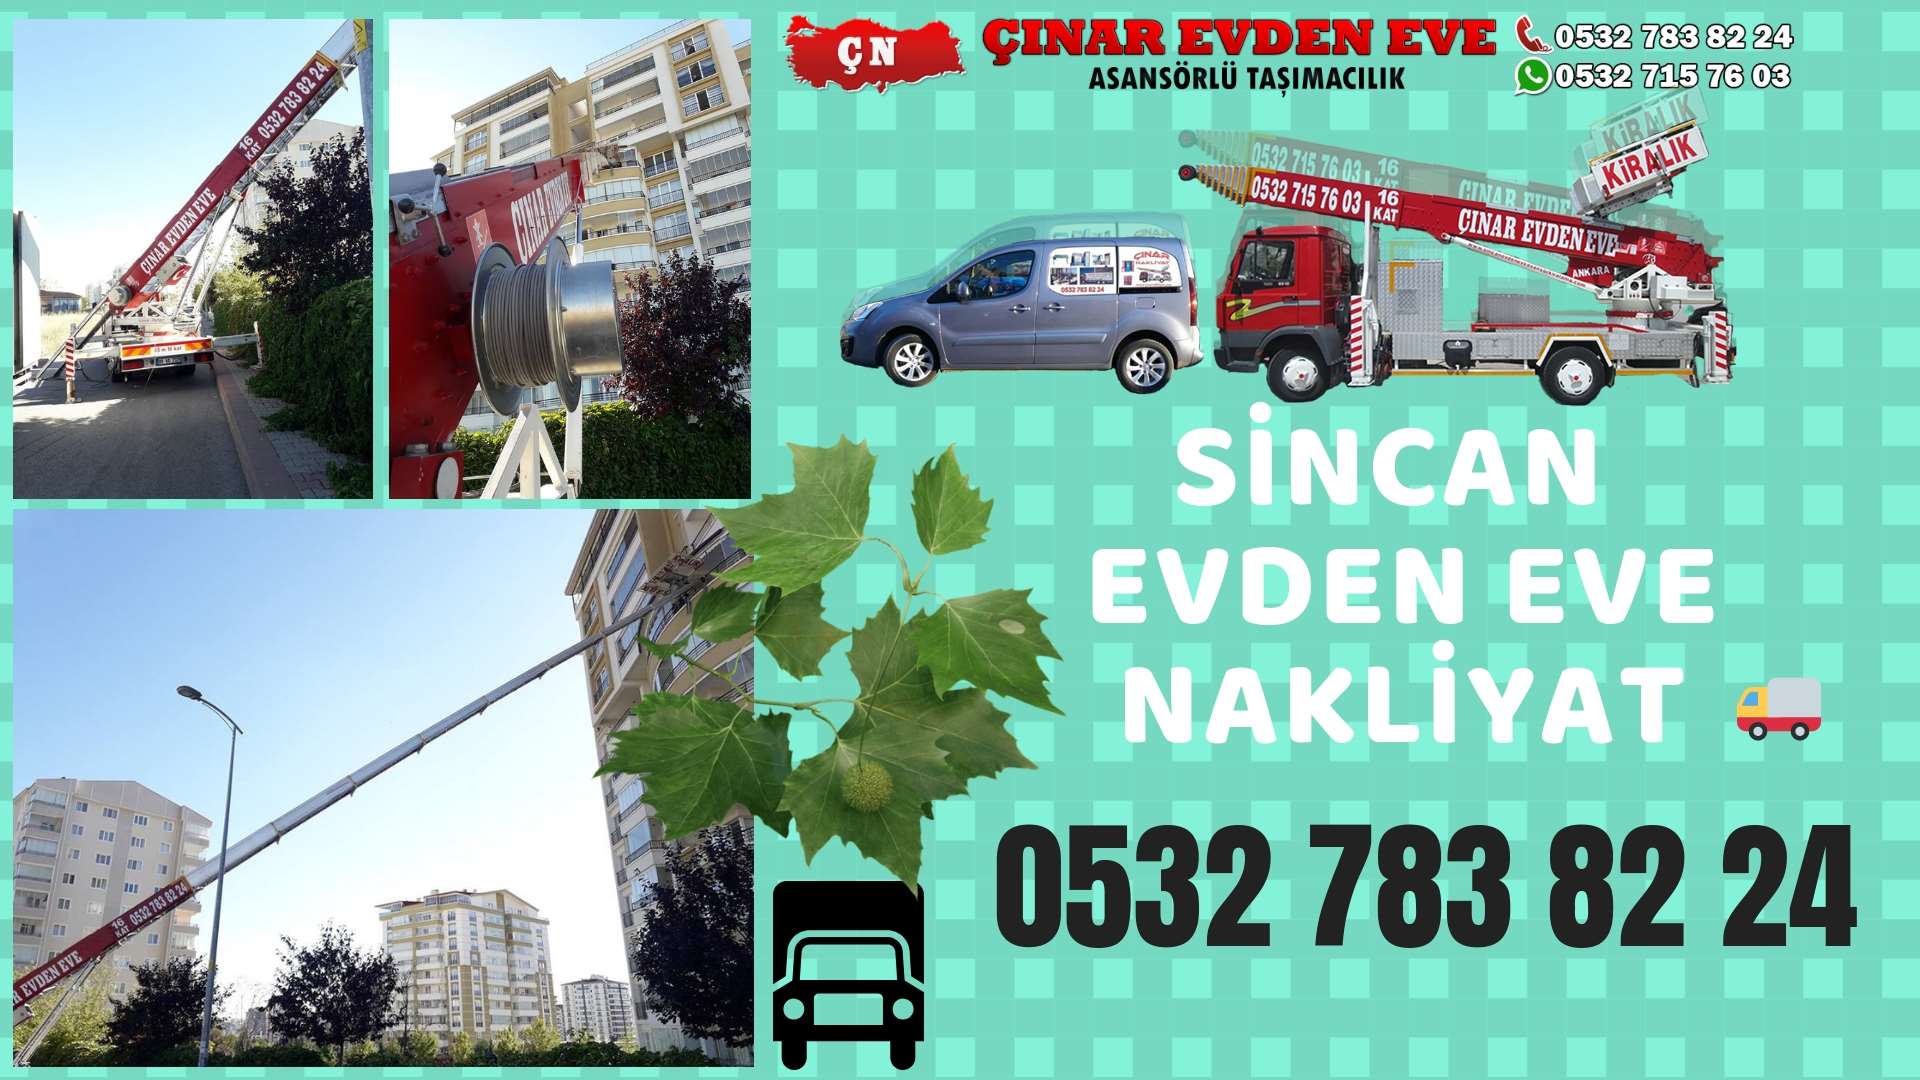 Ankara Eryaman sincan ev eşya taşımacılığı, sincan evden eve 0532 715 76 03